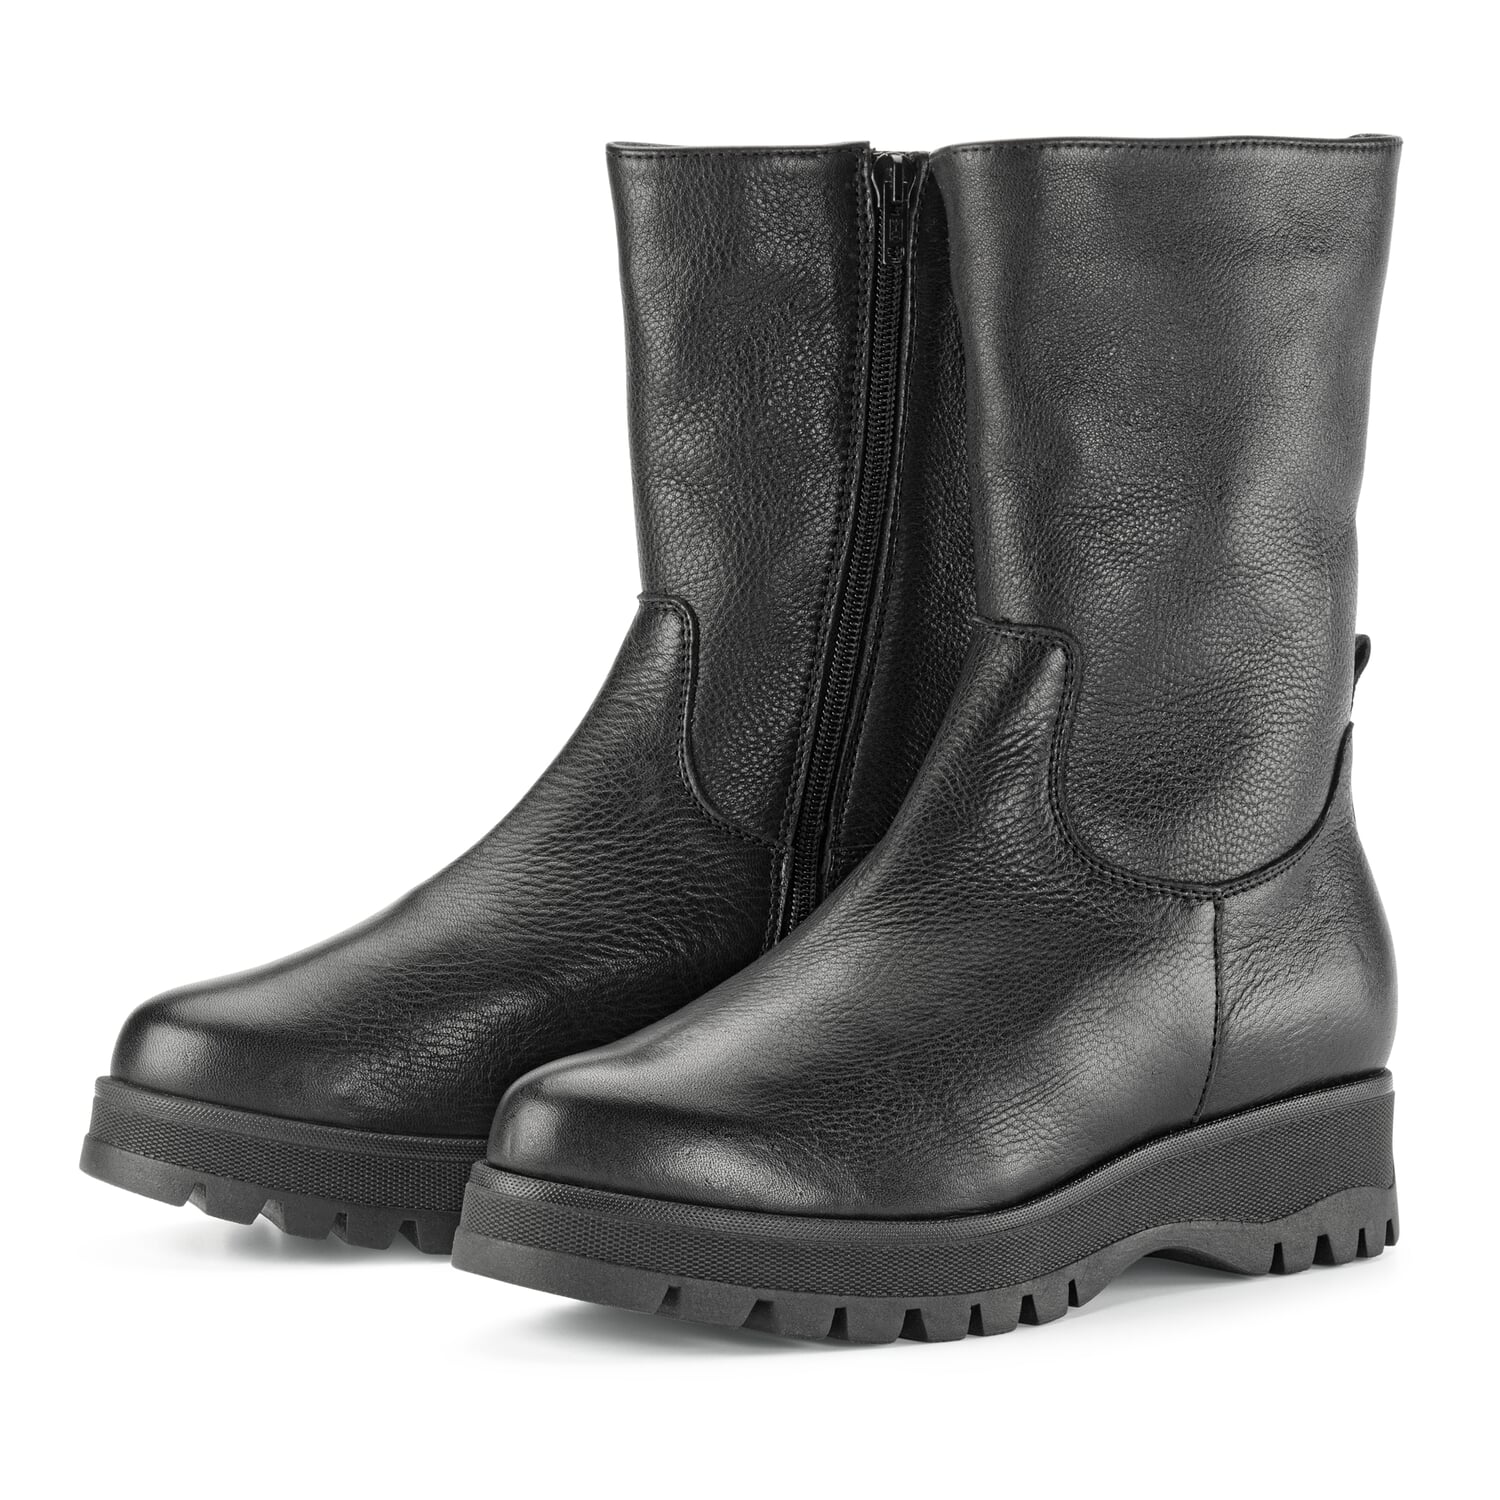 Maaltijd prioriteit Bijzettafeltje Ladies leather boots, Black | Manufactum